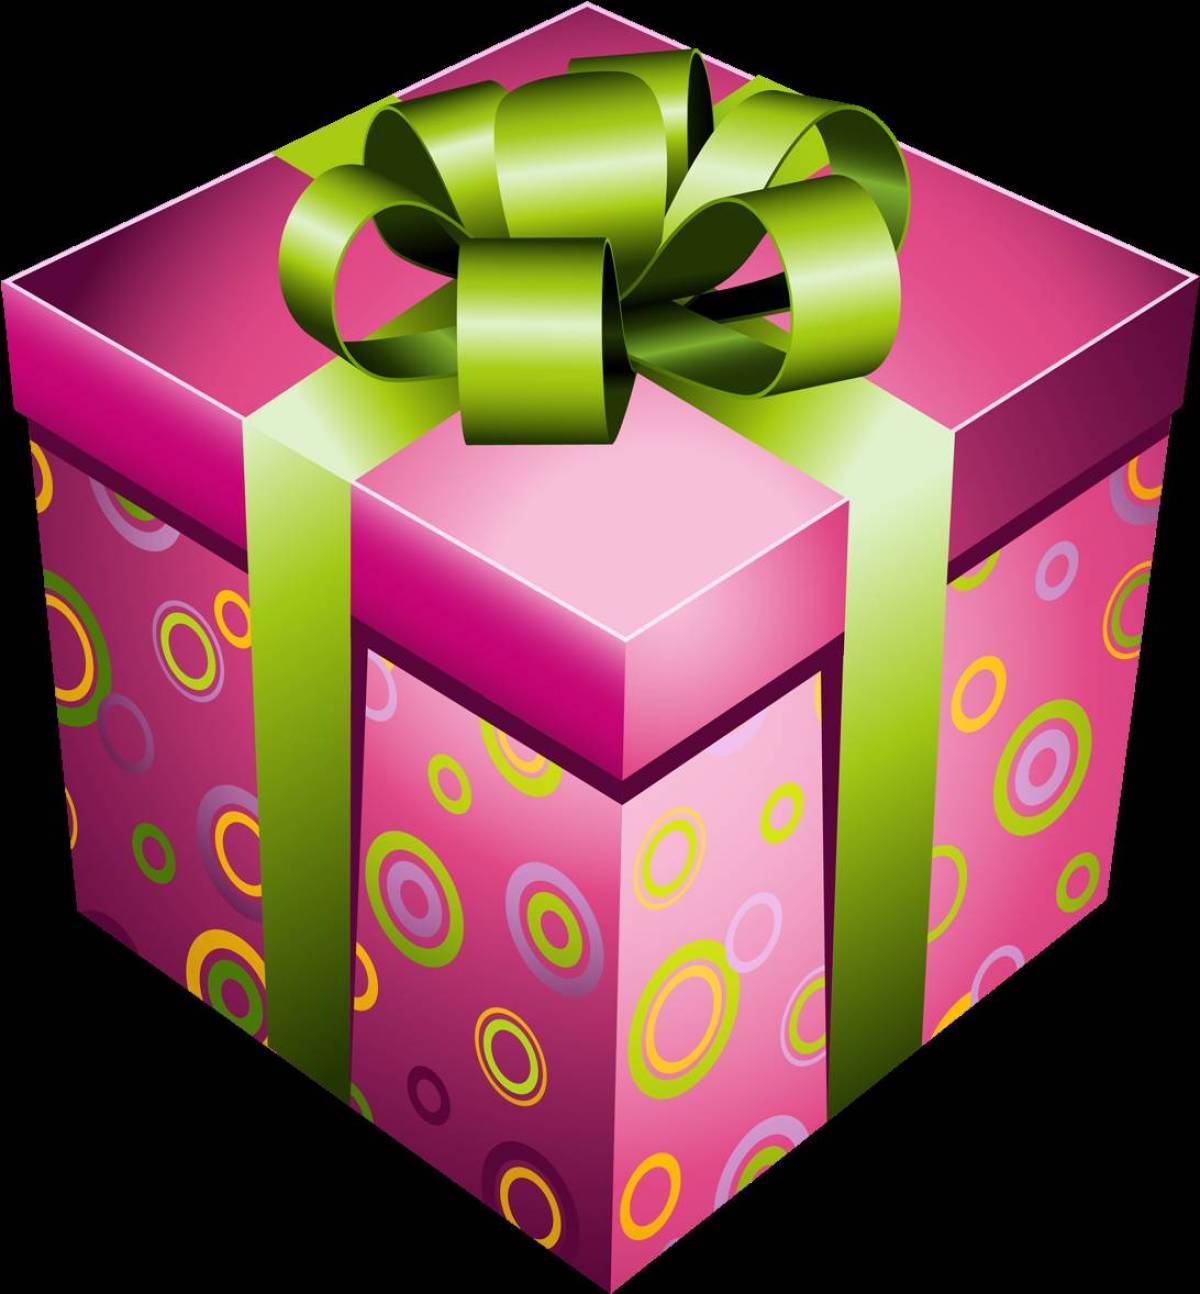 5 Подарков. Telegram Gift. Подарок тг бот. Картинка коробка ничего.